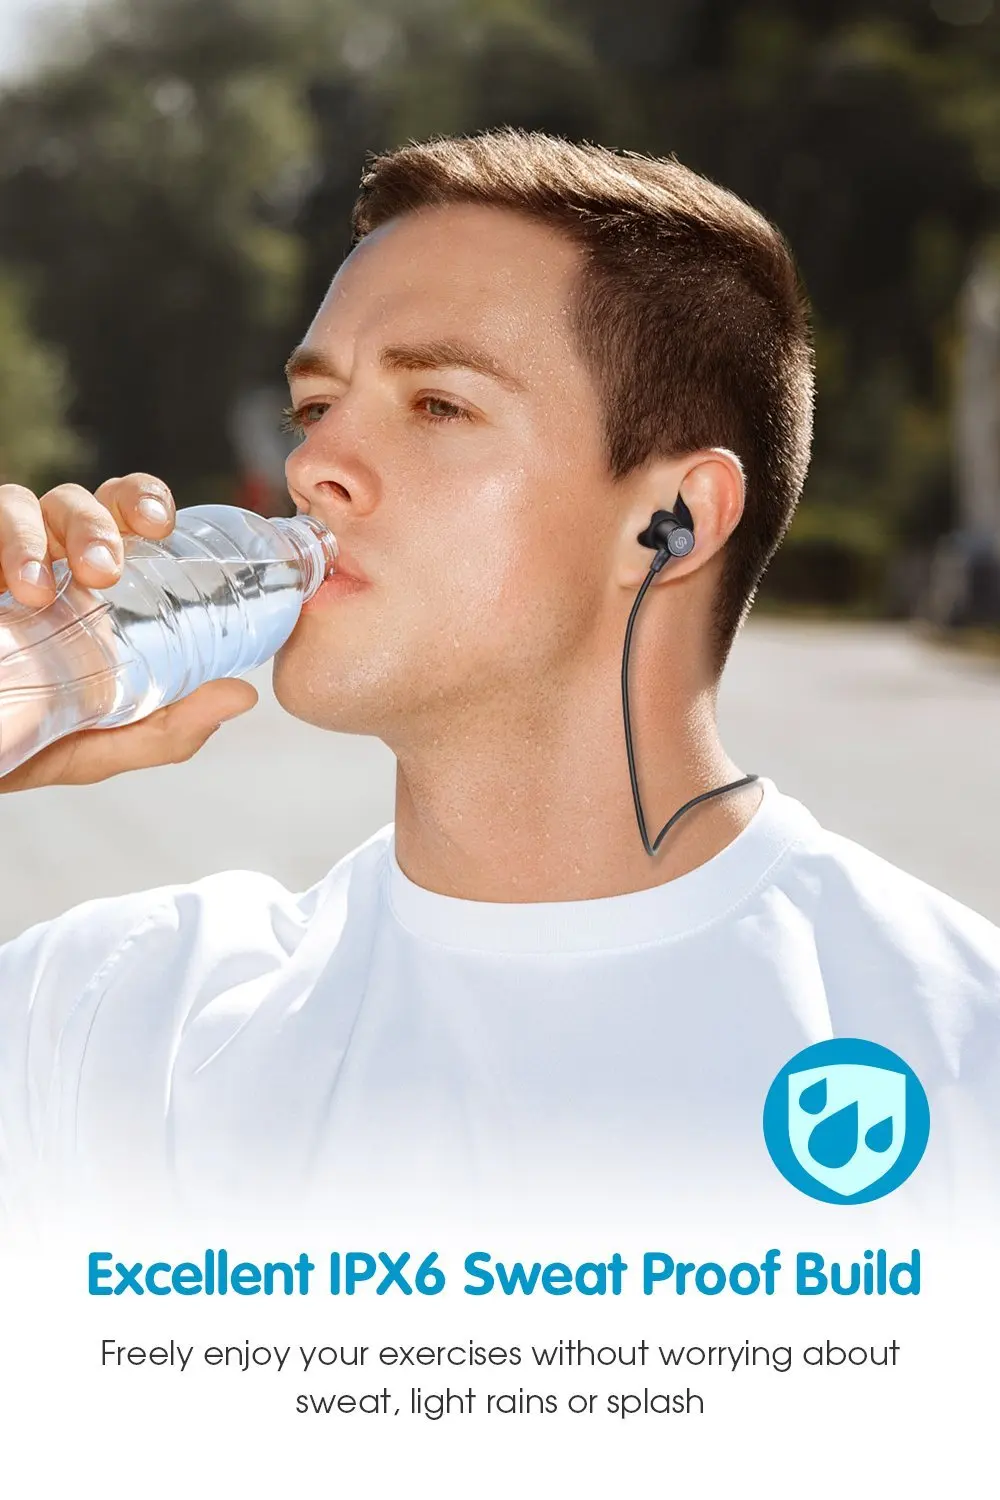 SoundPEATS супер бас стерео беспроводные Bluetooth наушники-вкладыши спортивные IPX6 водонепроницаемые наушники с микрофоном для iPhone samsung sony